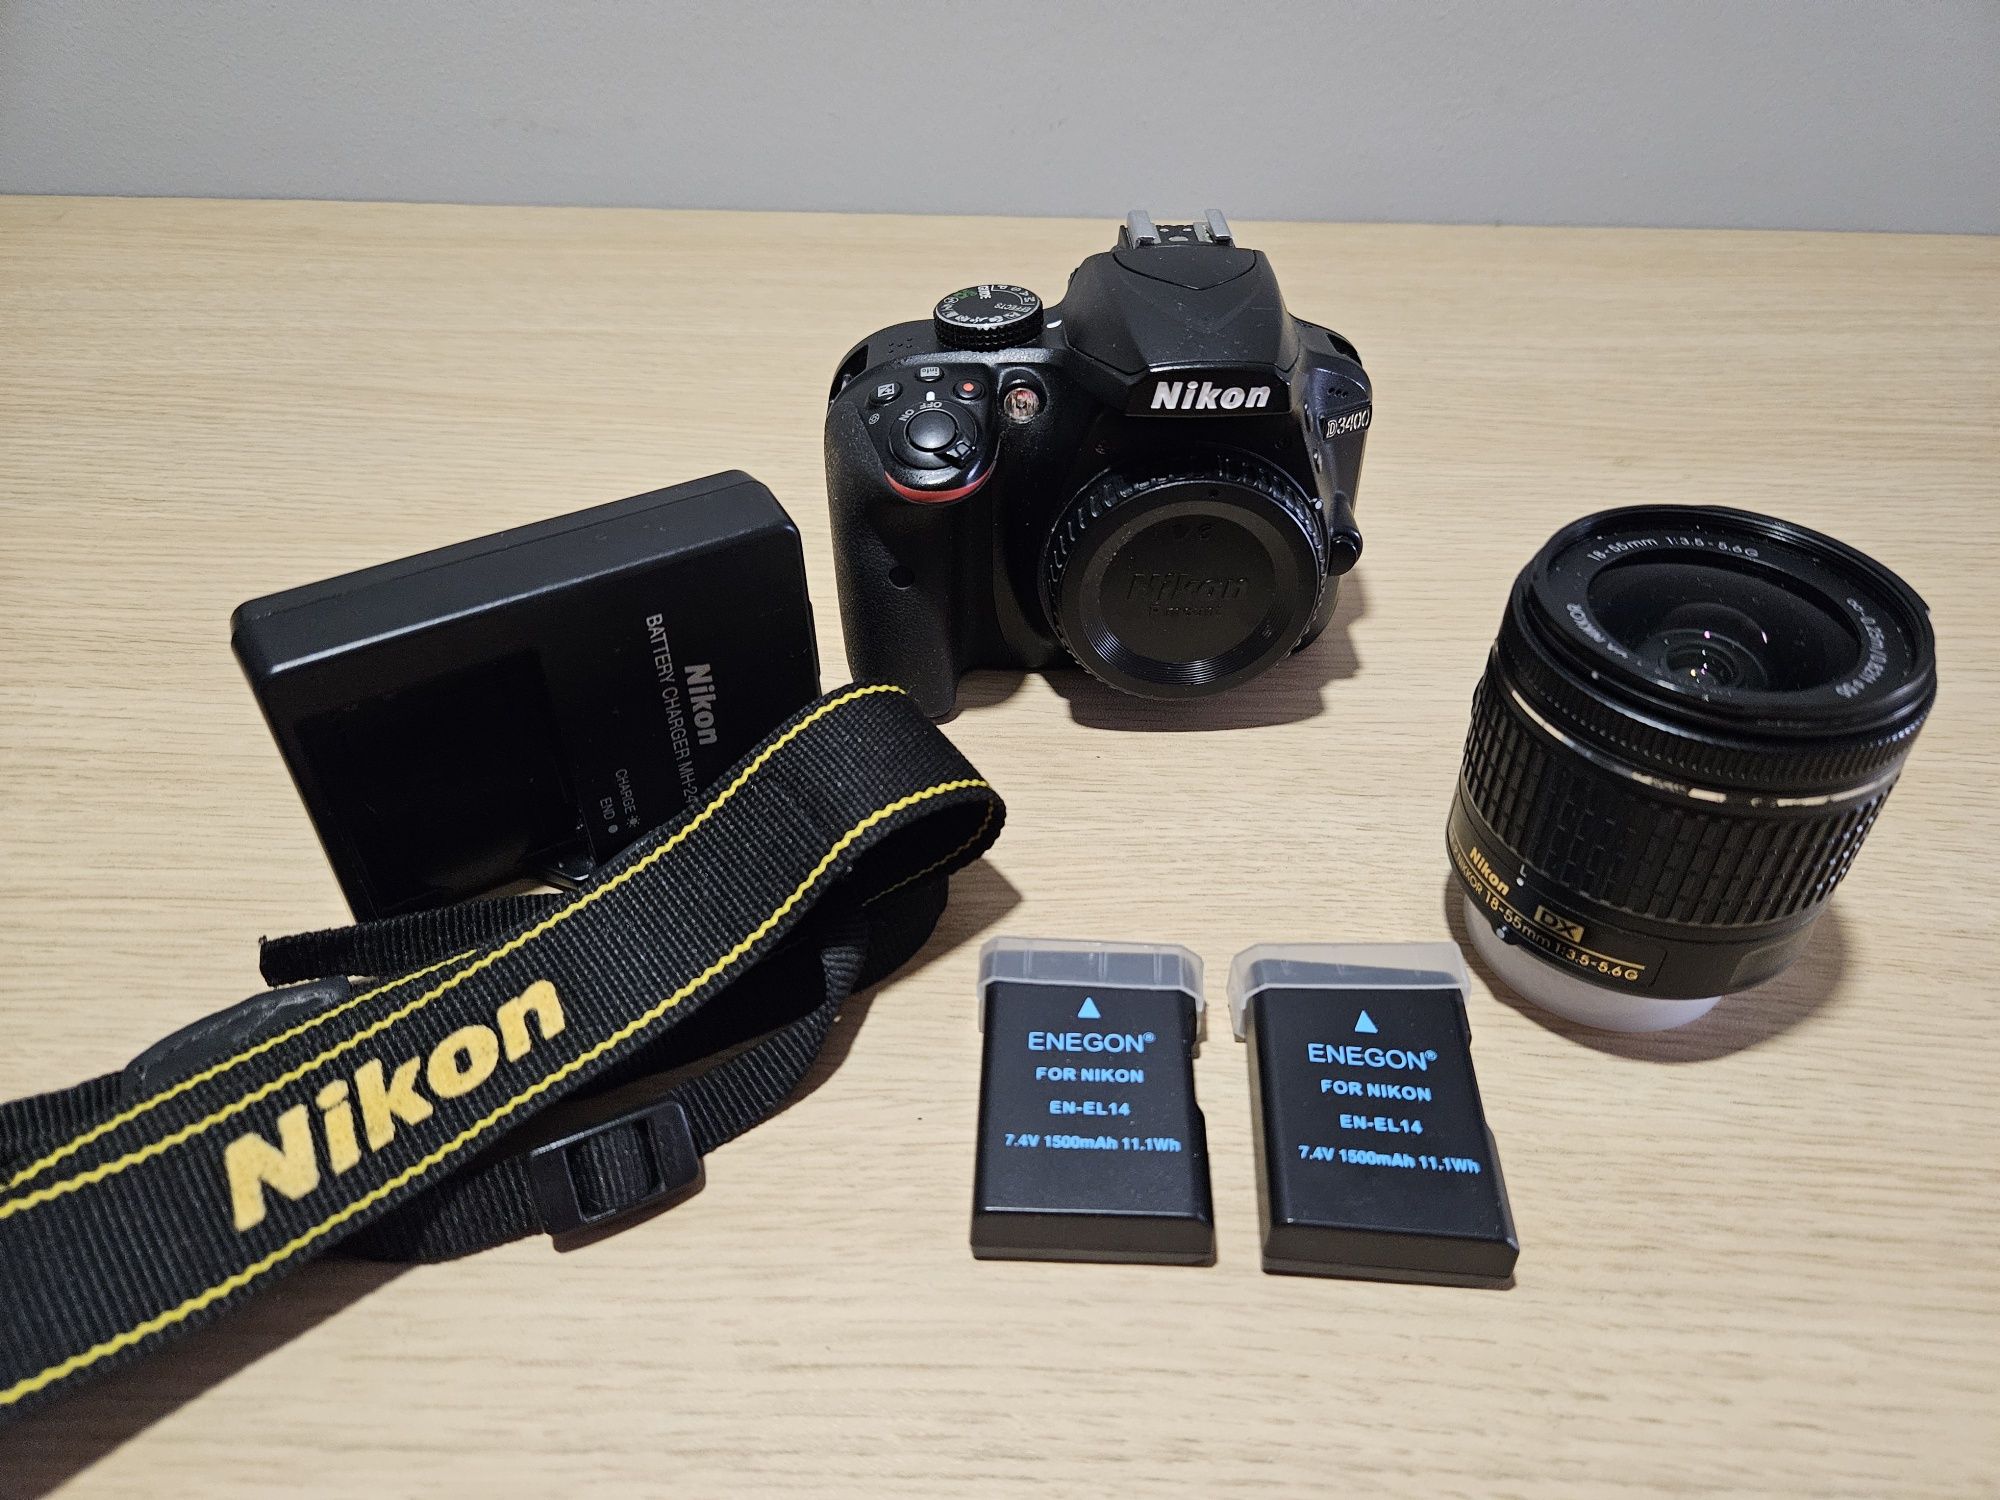 Nikon D3400 + 18-55mm